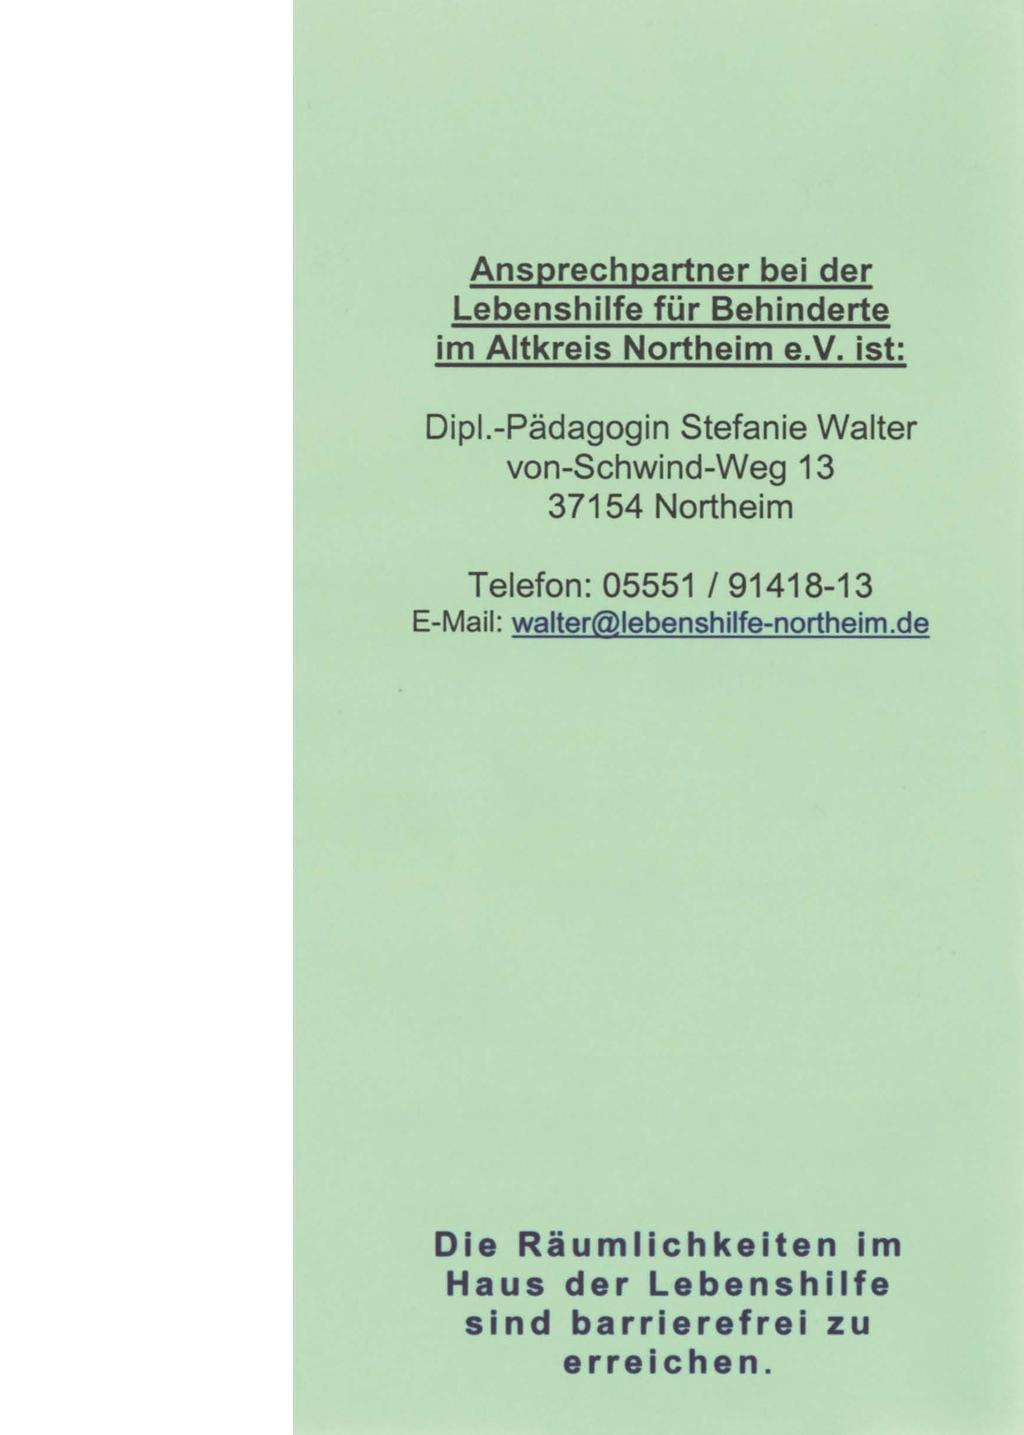 Ansprechpartner bei der Lebenshilfe für Behinderte im Altkreis Northeim e.v. ist: Dipl.